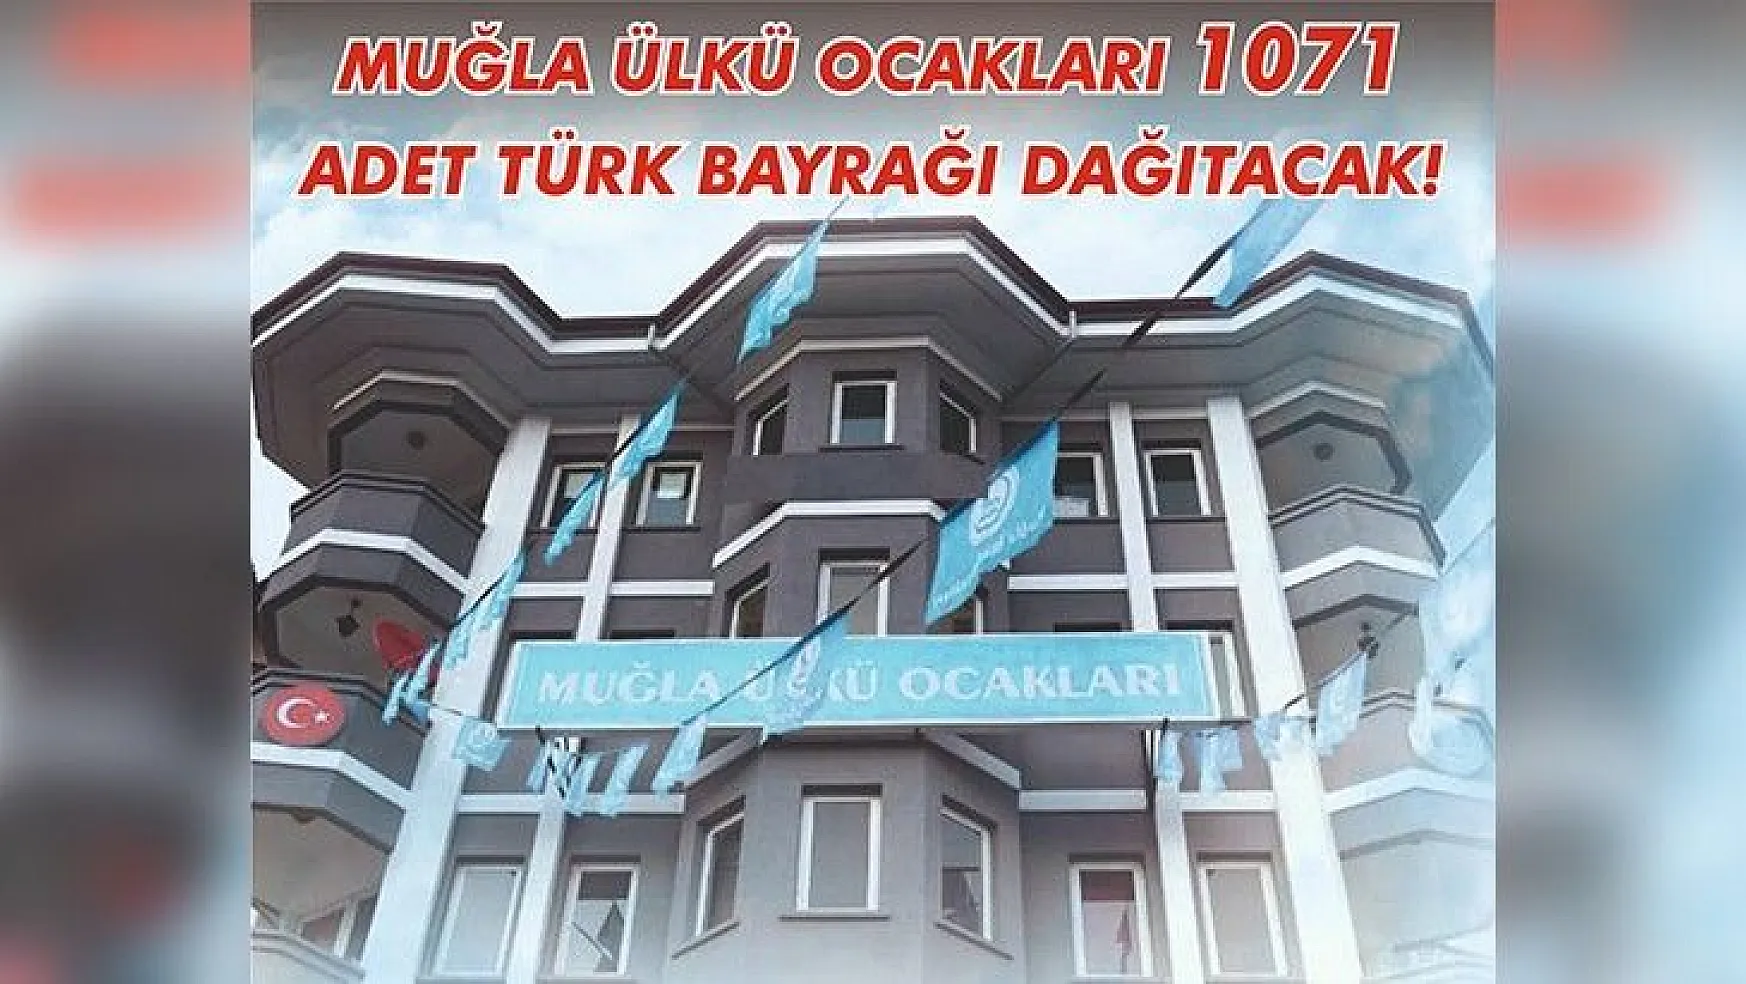 Muğla Ülkü Ocakları 1071 adet Türk Bayrağı dağıtıyor